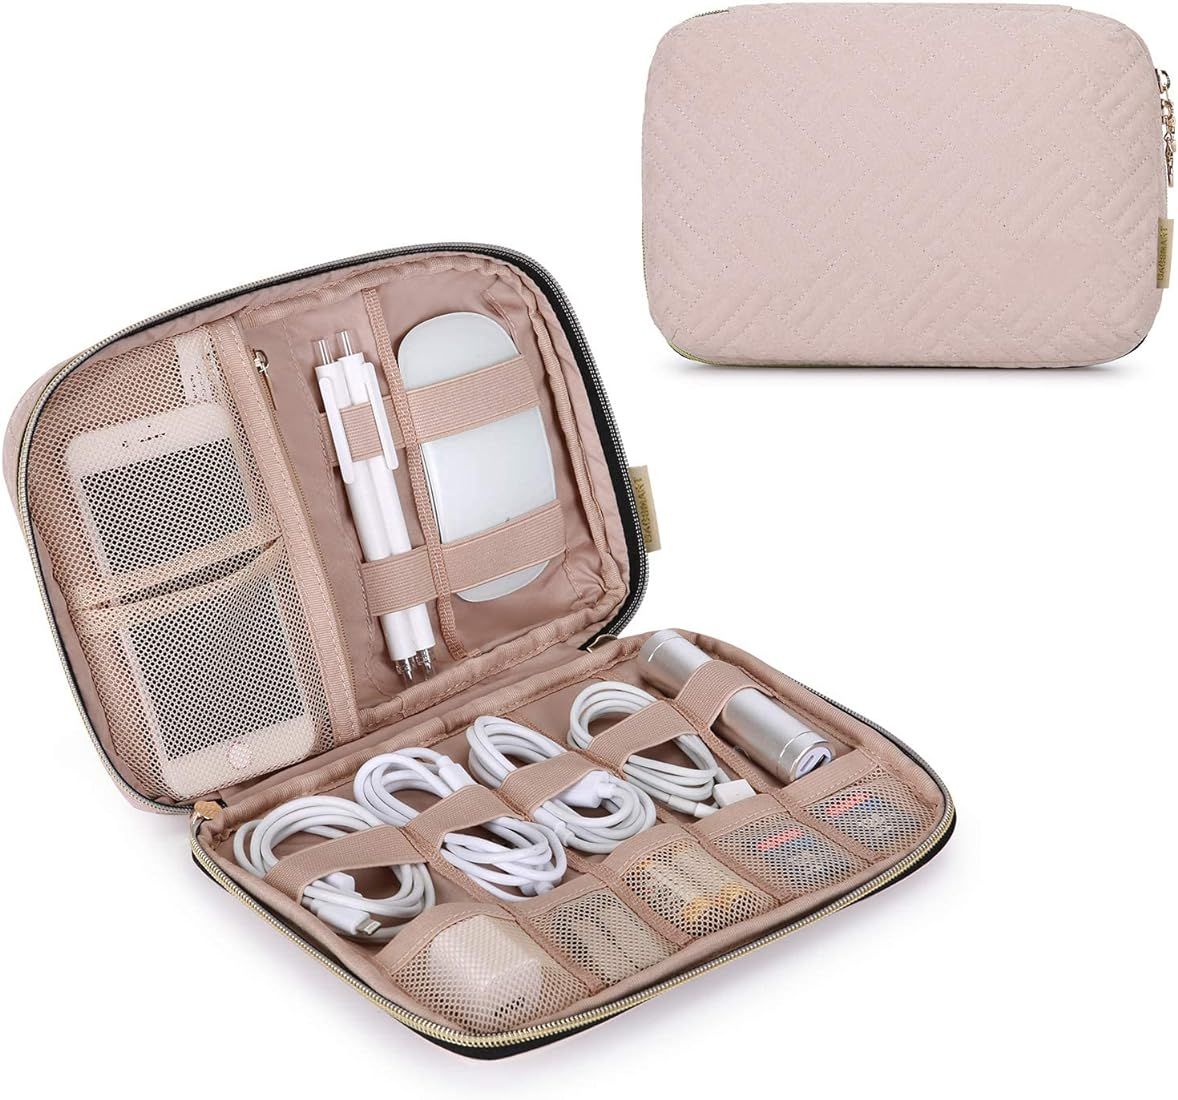 BAGSMART Electronics Organizer Travel Case, Small Travel Cable Organizer Bag for Travel Essential... | Amazon (US)